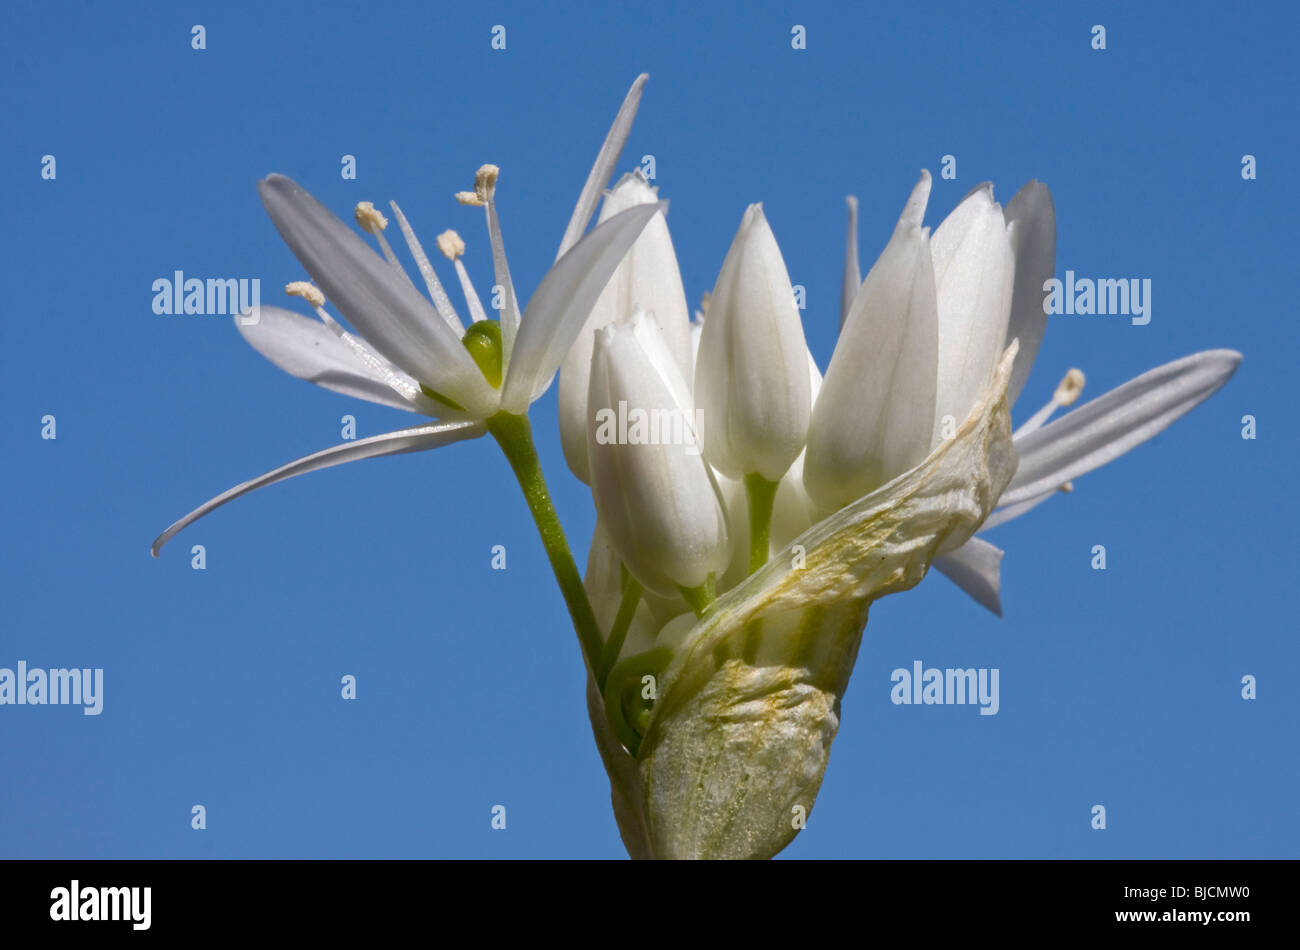 Blooming ramson, Allium ursinum Stock Photo